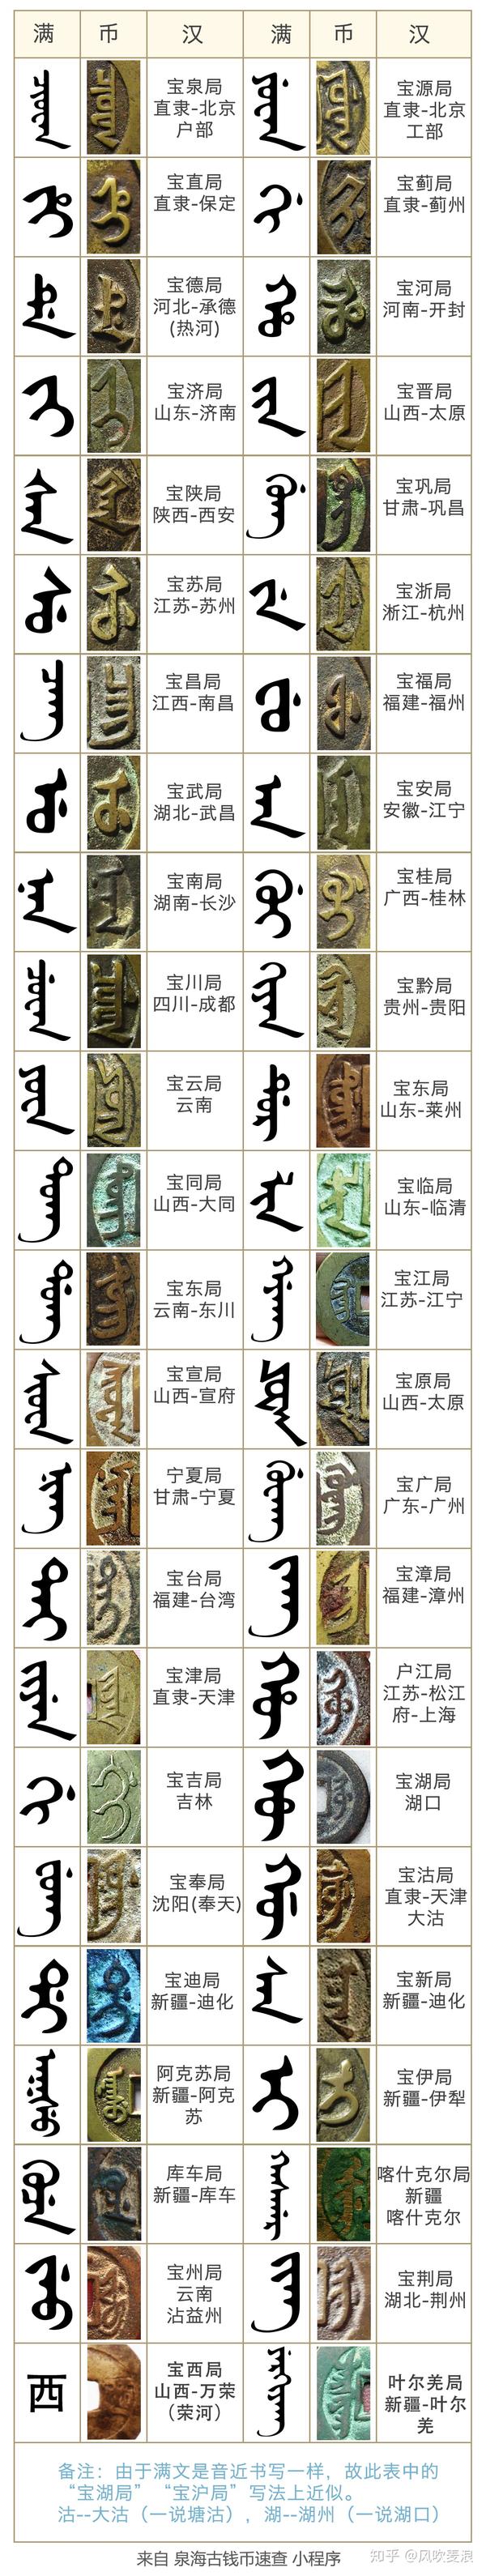 清代古钱币中的满汉文对照,比较全的图表